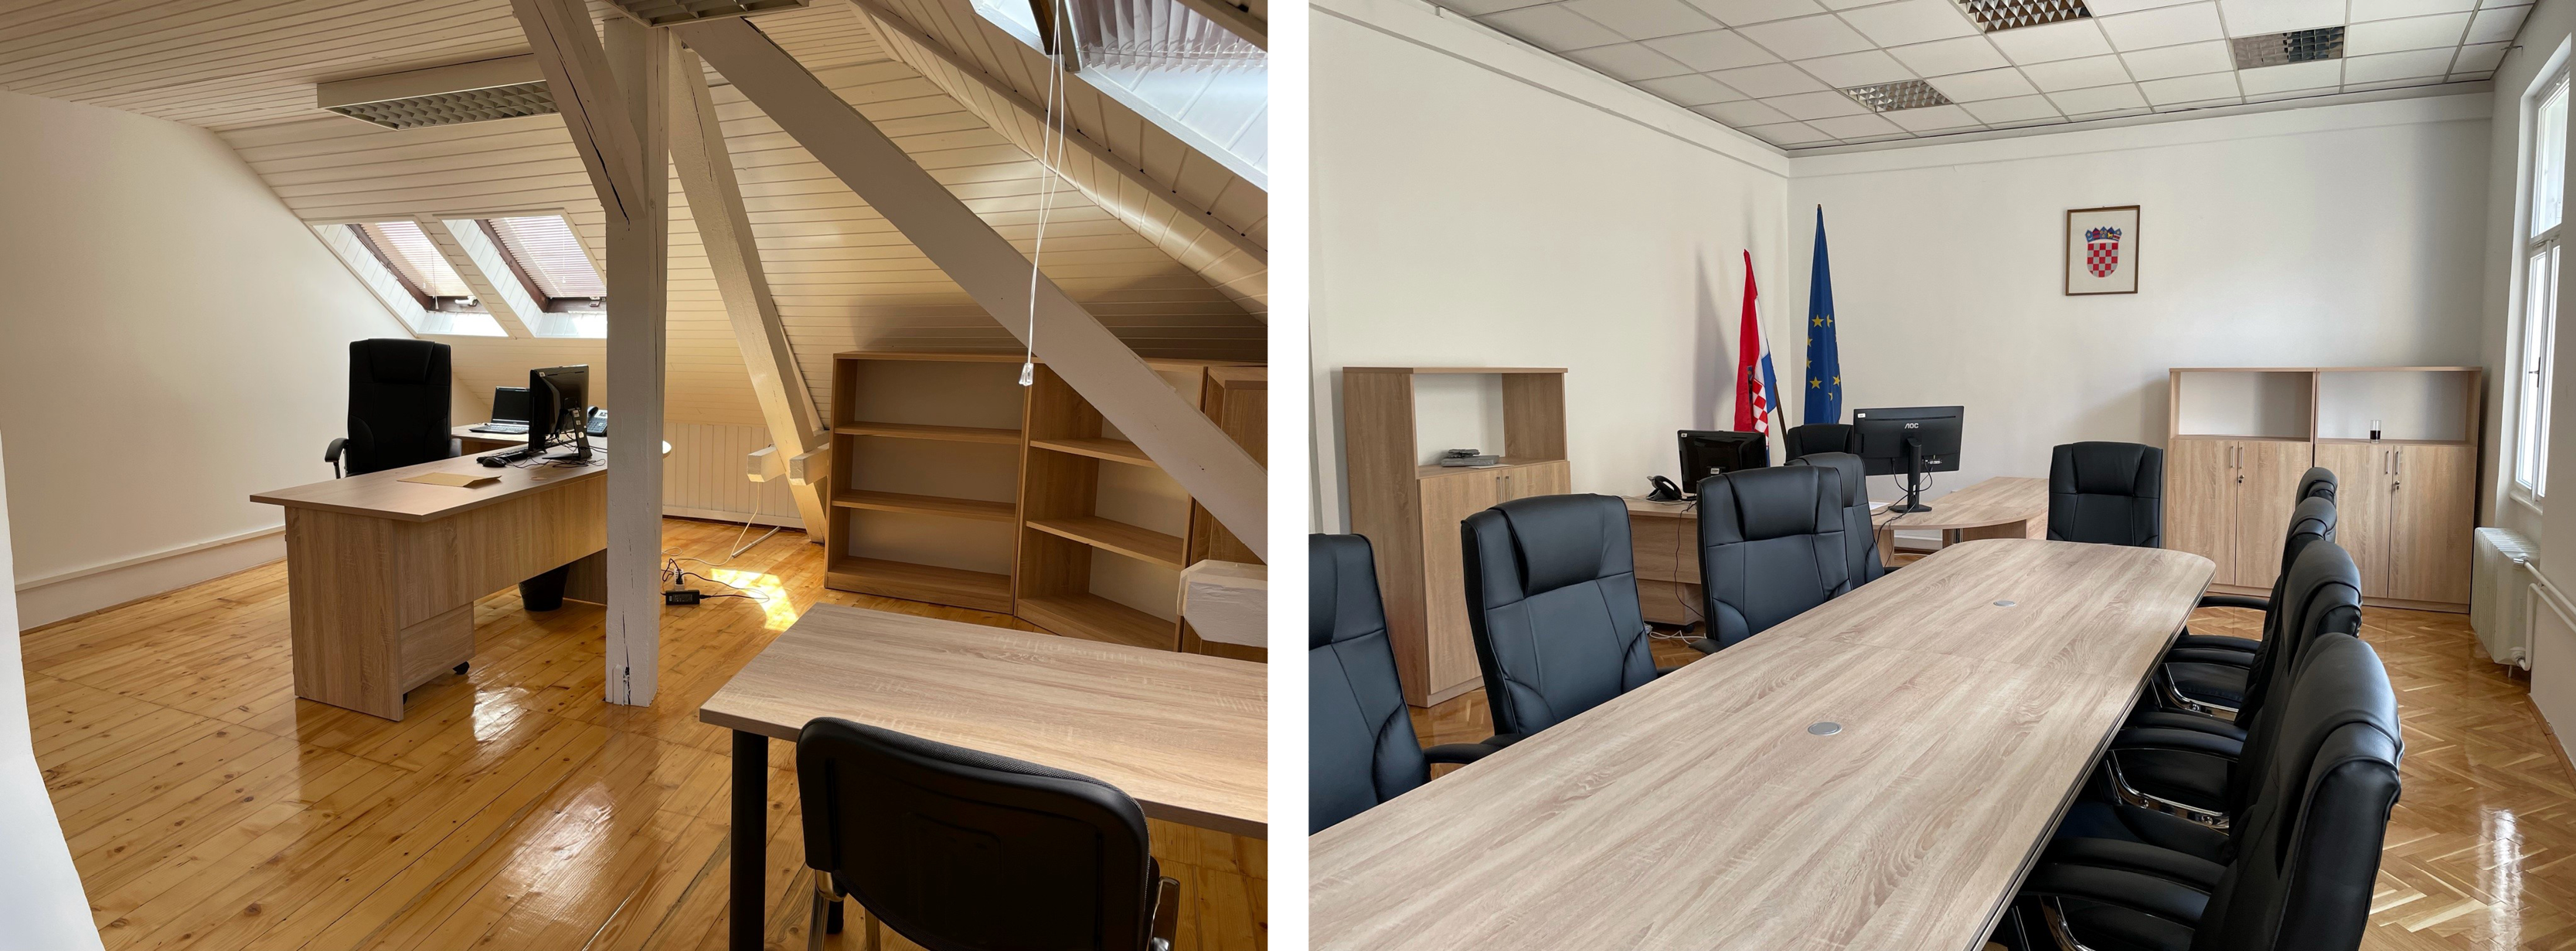 EPPO office Croatia, new premises